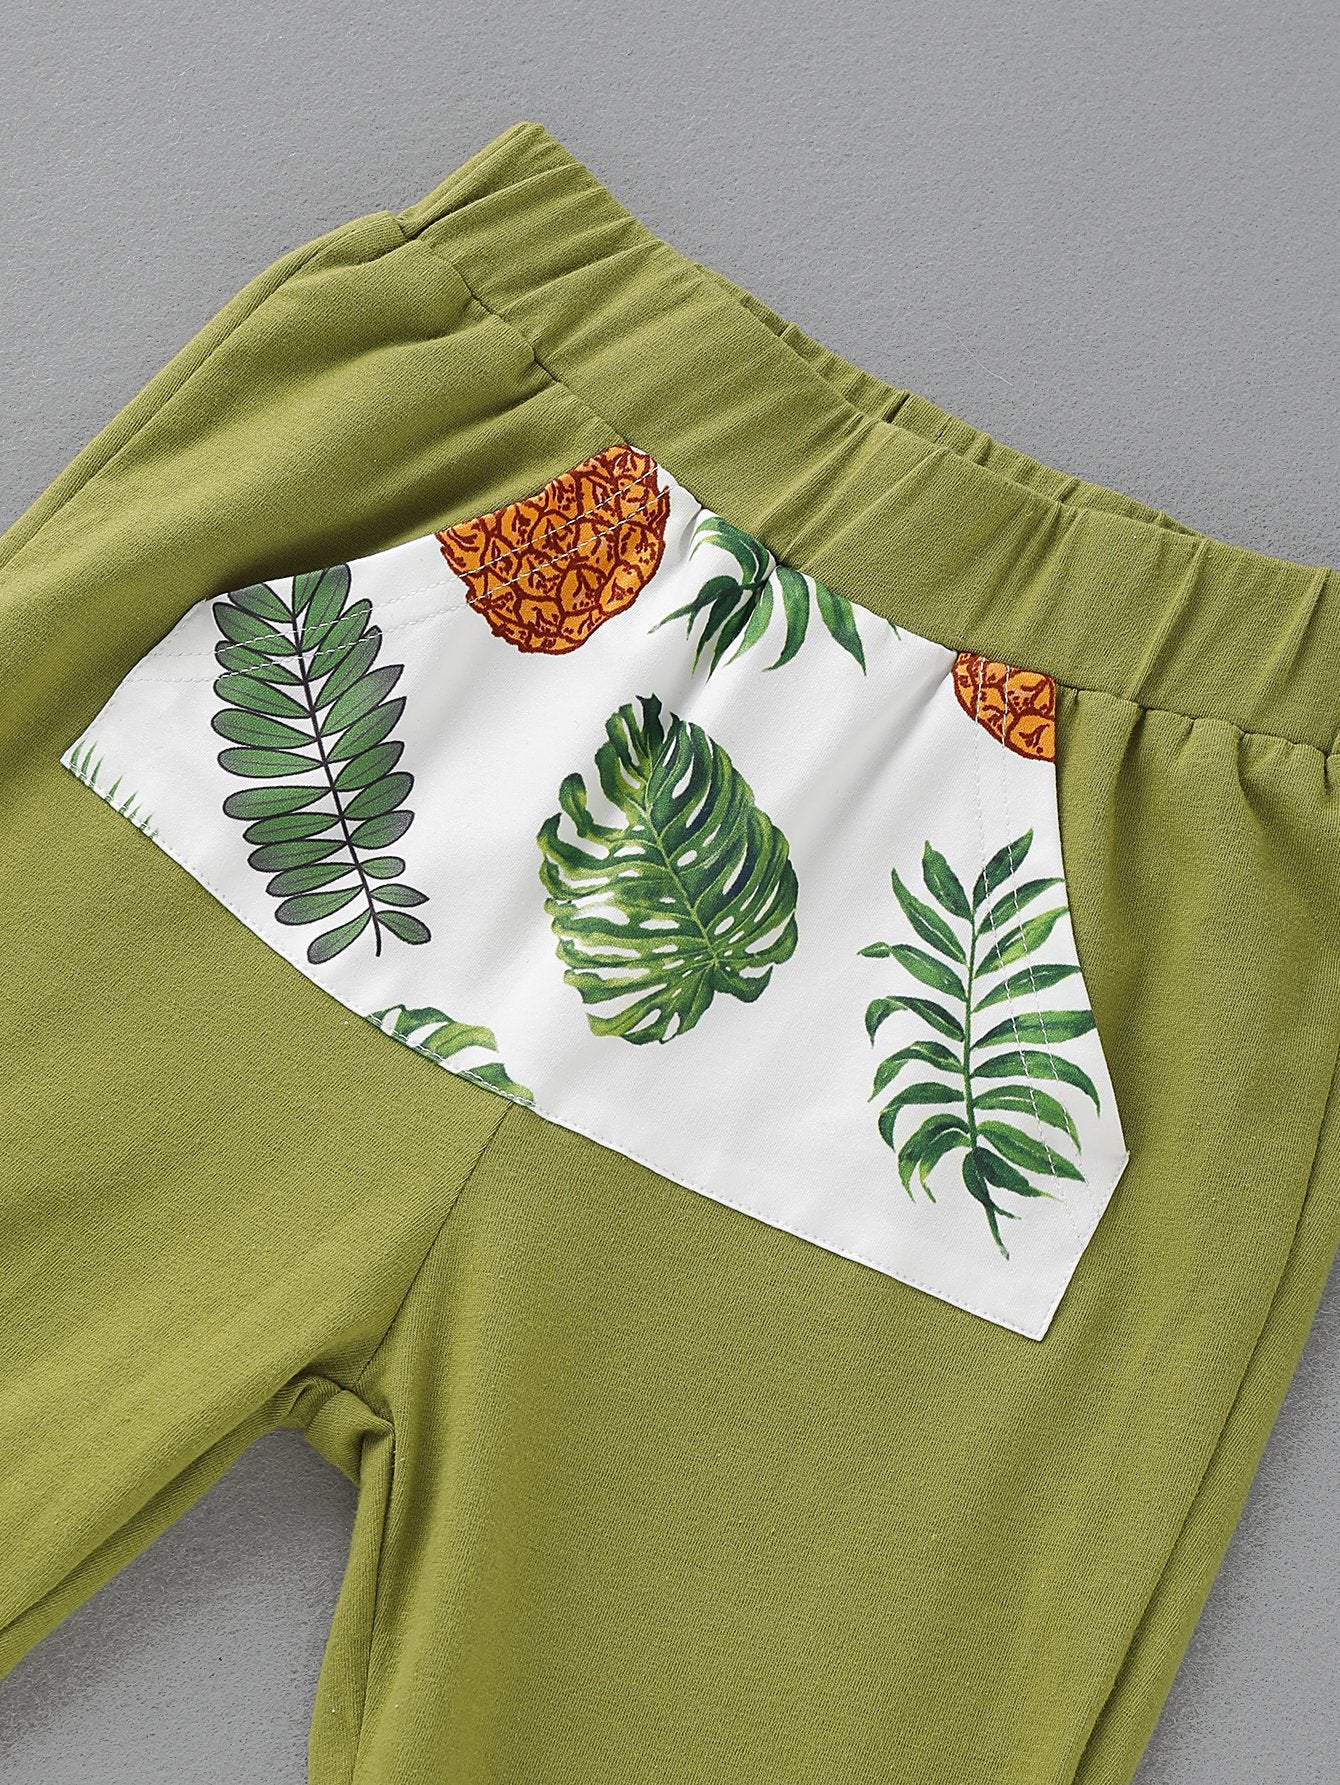 Girls Fruit Printed Long Sleeve Top & Pants kids wholesale clothing